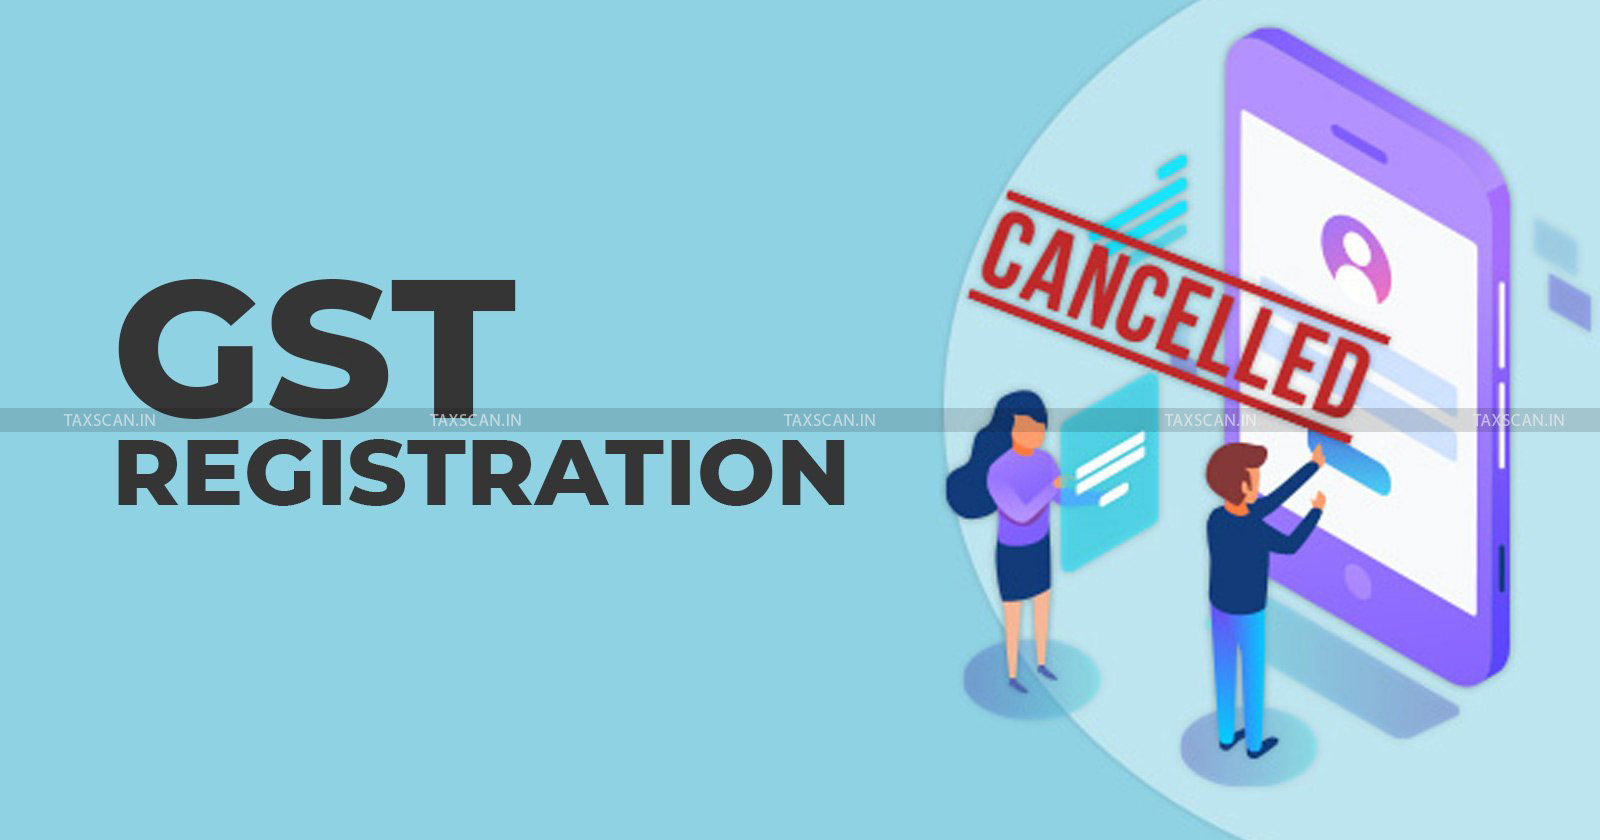 GST - GST registration - GST registration cancellation - Delhi High Court - Retrospective effect - GST cancellation - taxscan